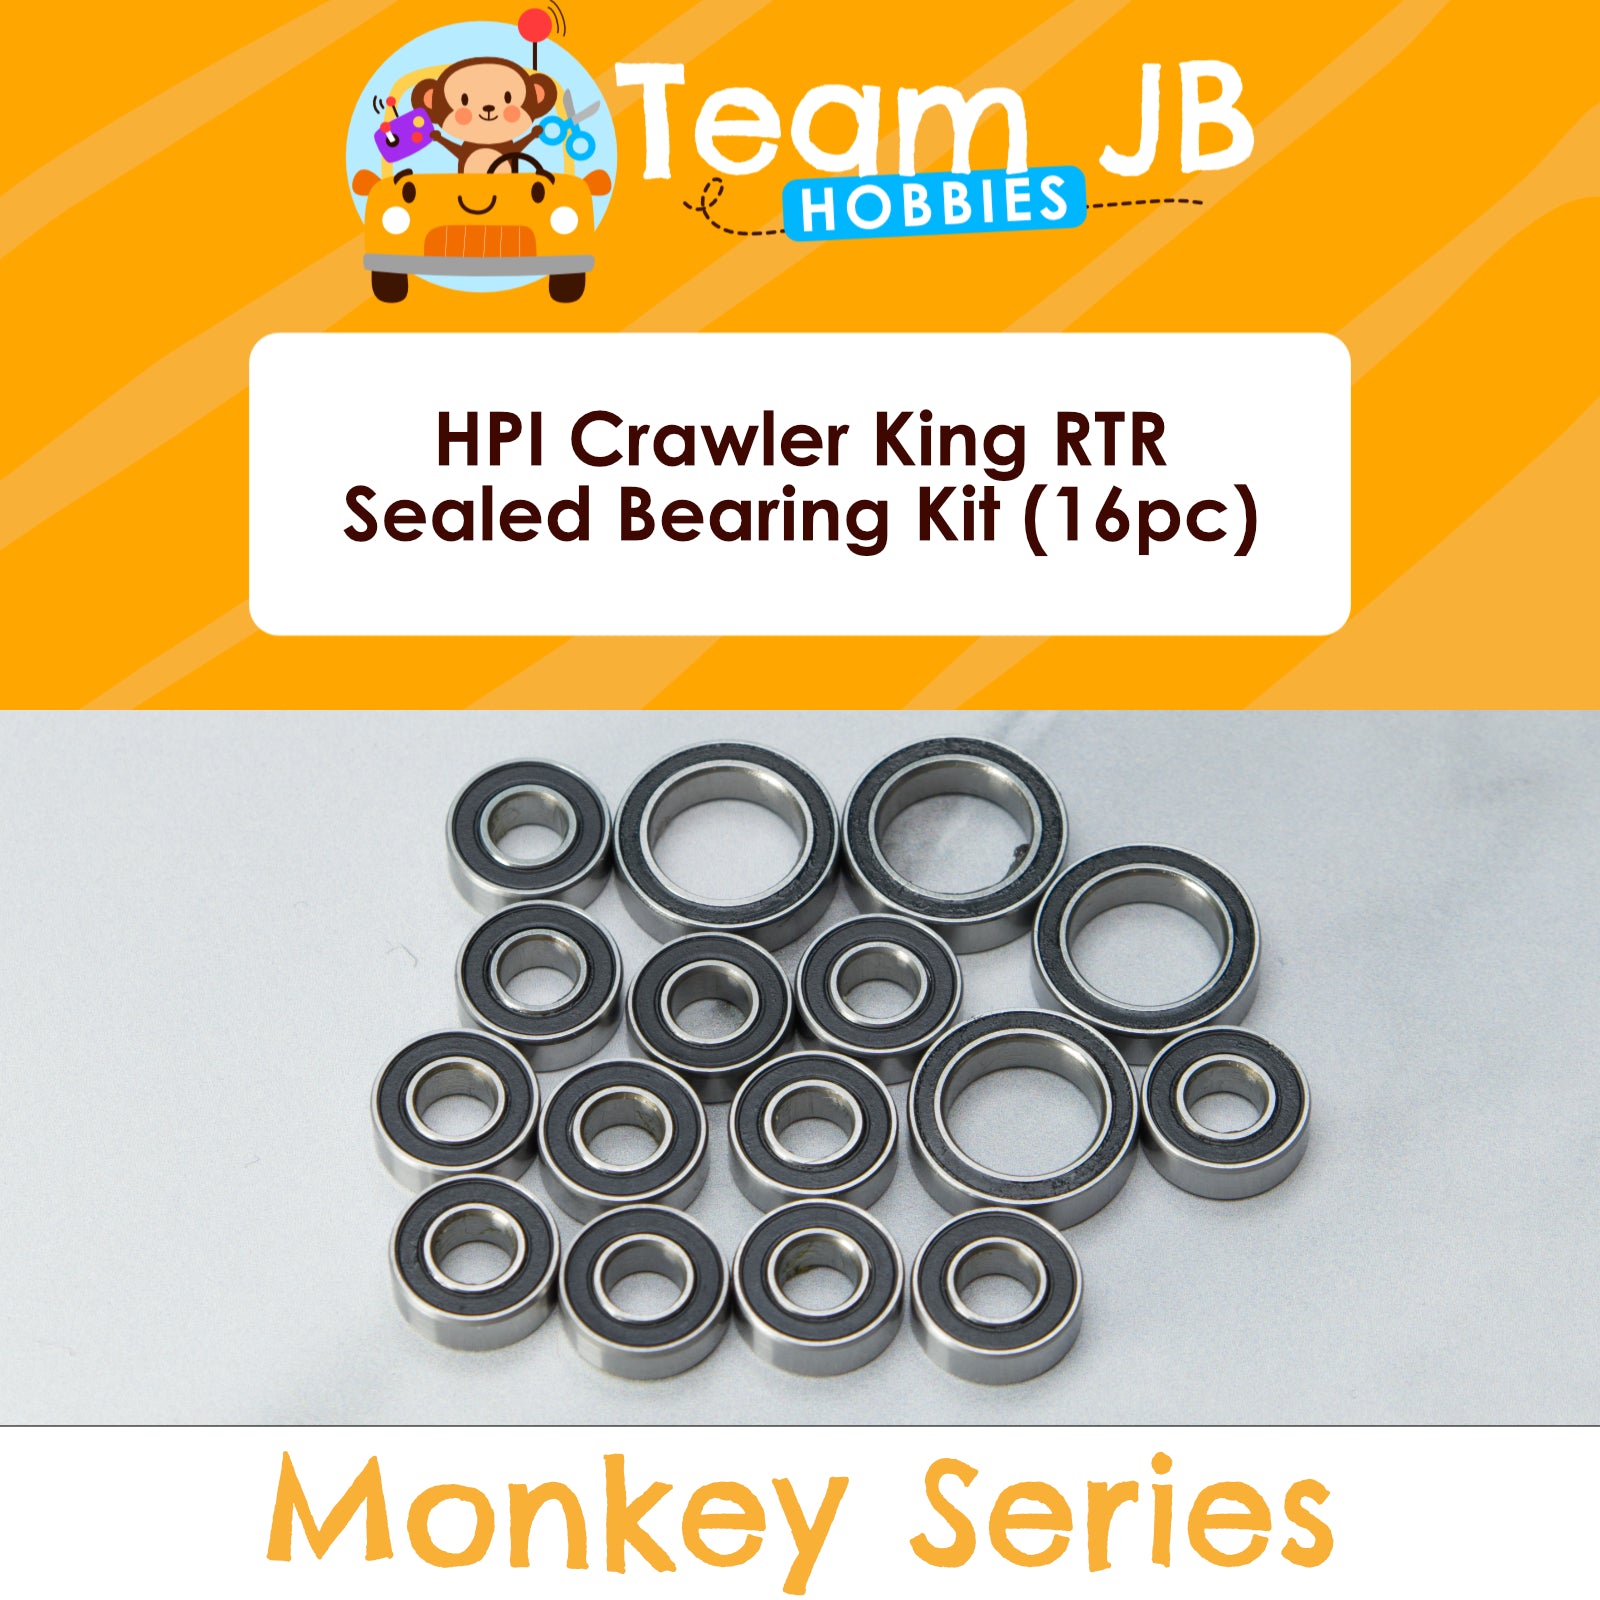 HPI Crawler King RTR - Sealed Bearing Kit